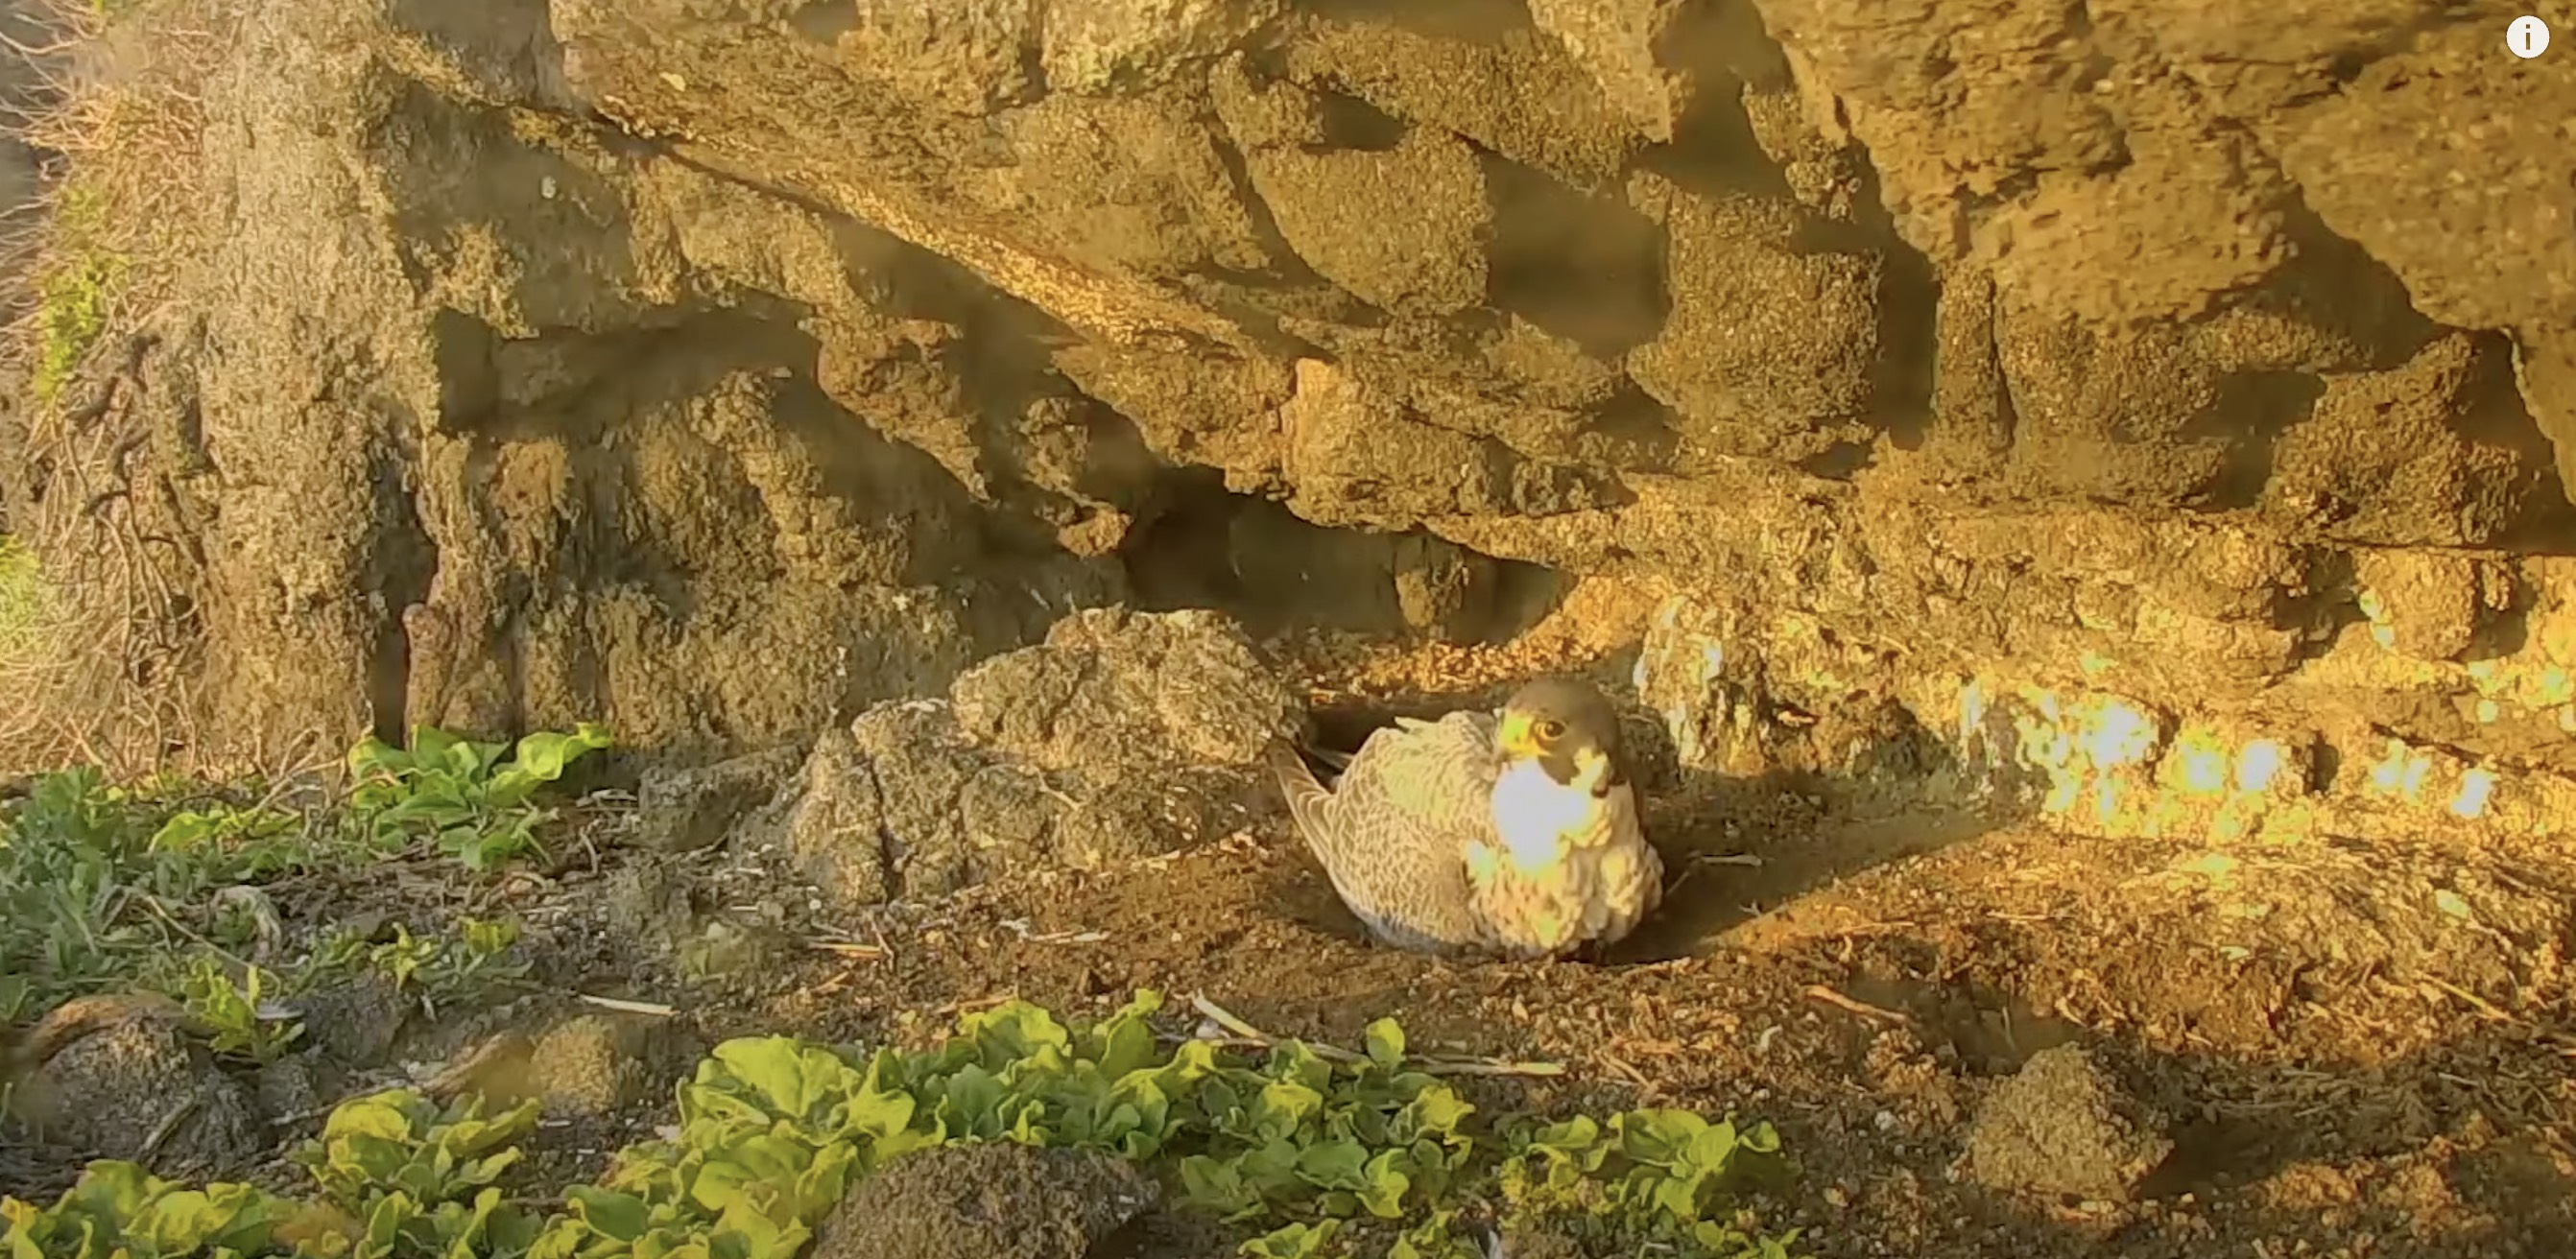 Вид с камеры на гнездо сапсанов на острове Анакапа